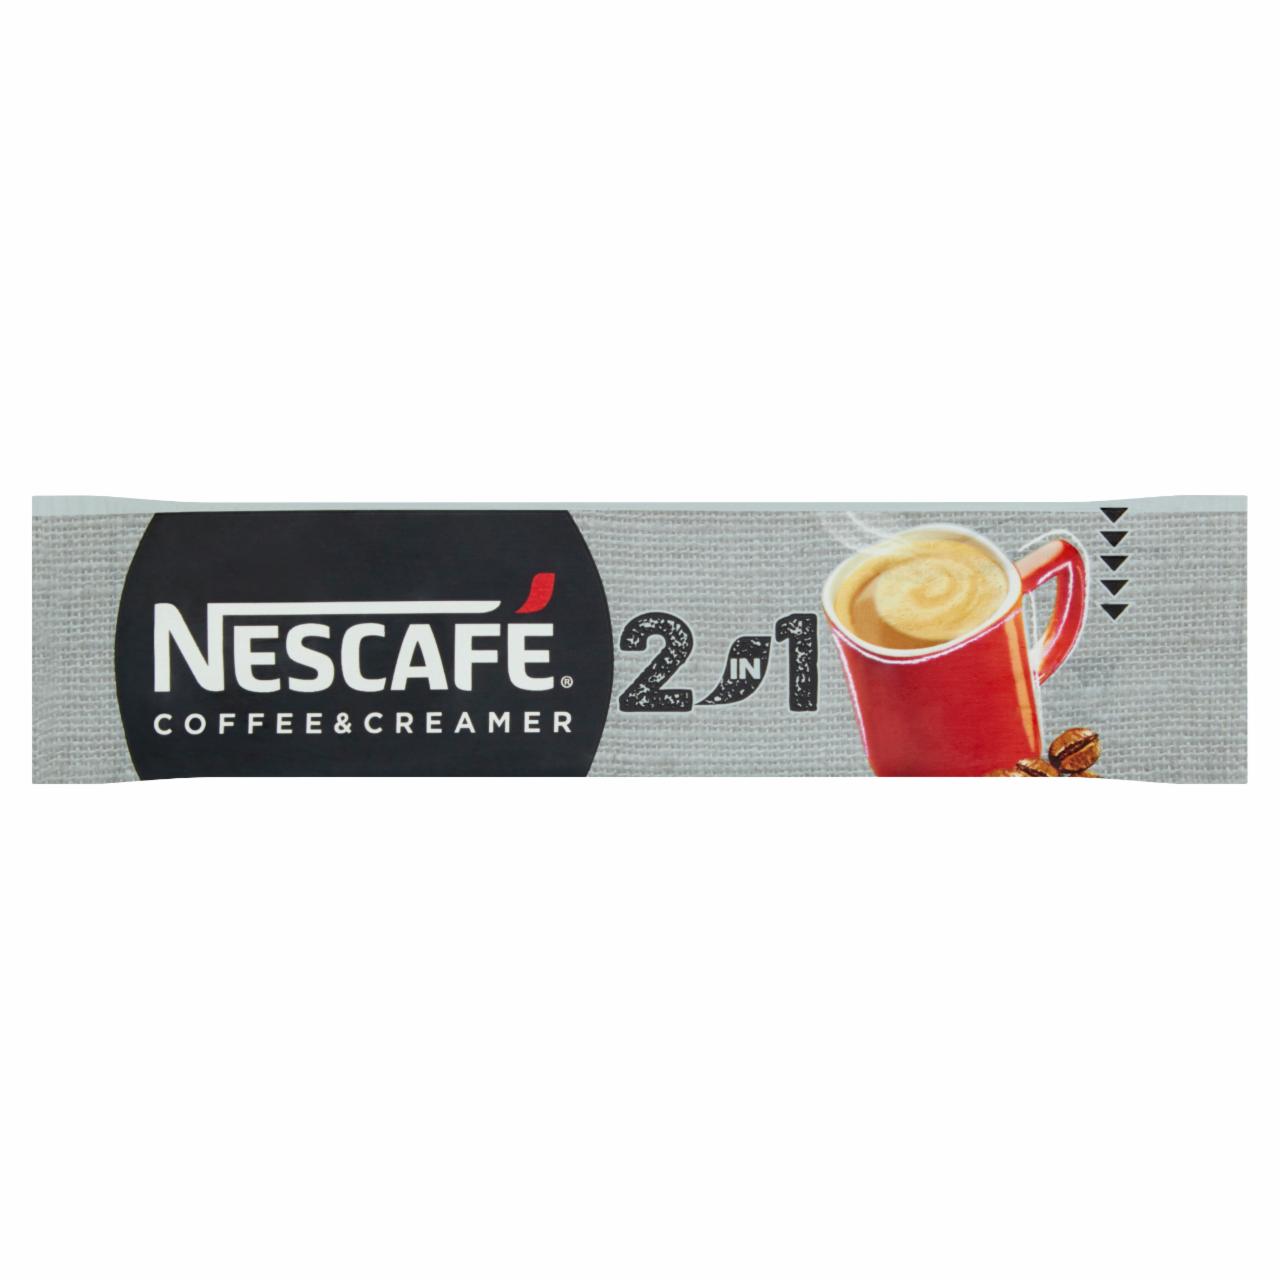 Zdjęcia - Nescafé 2in1 Coffee & Creamer Rozpuszczalny napój kawowy 8 g